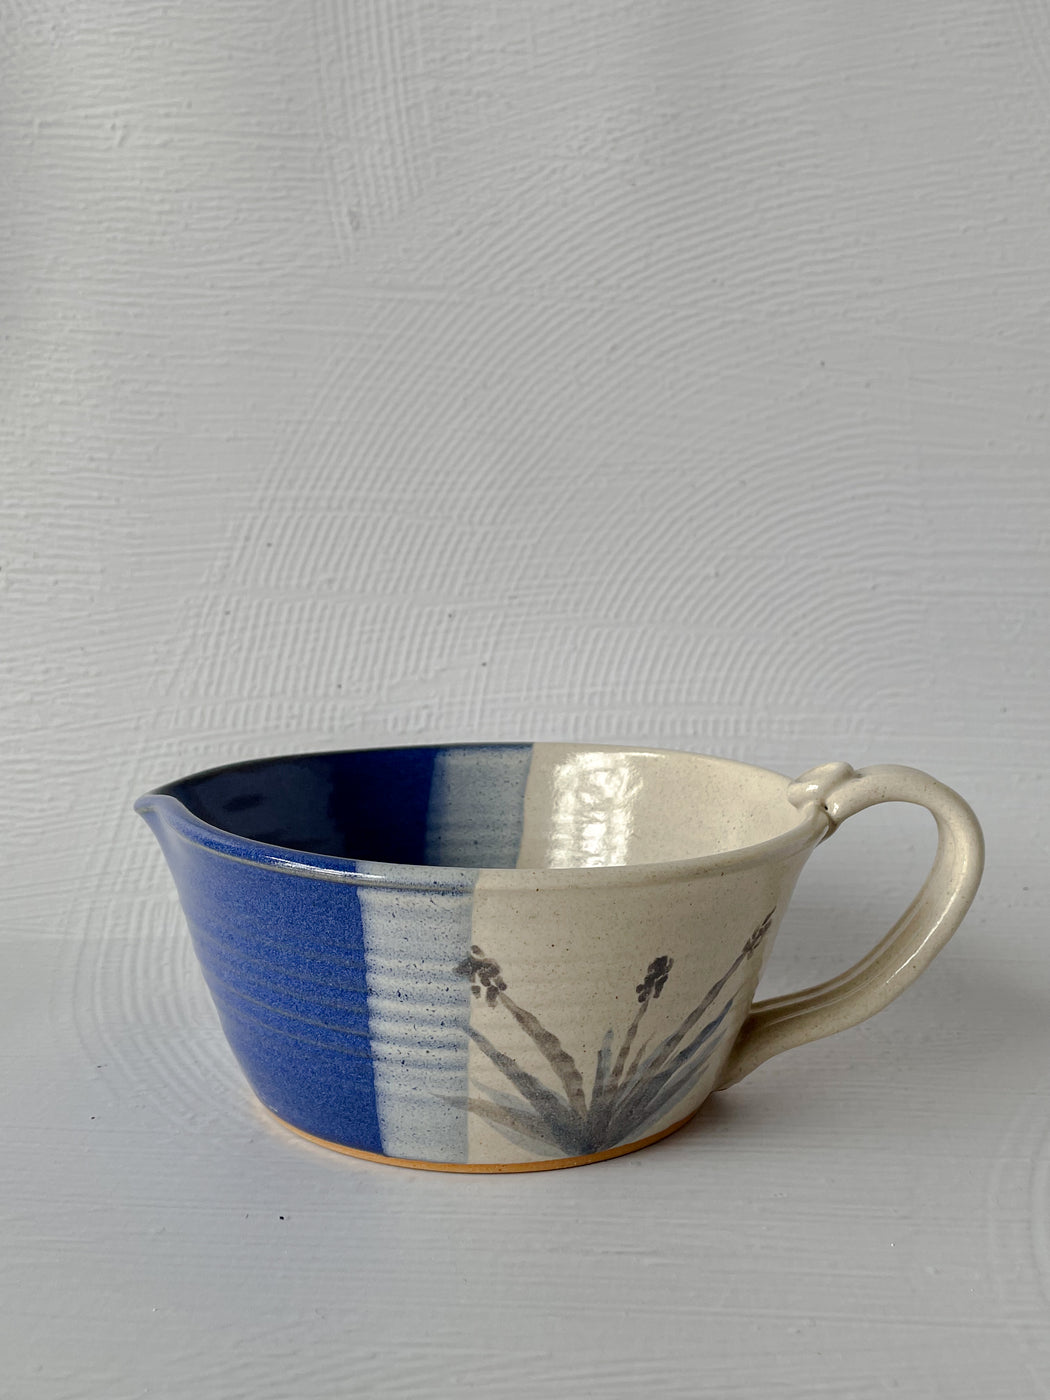 Blue & Cream Speckled Ceramic Bowl